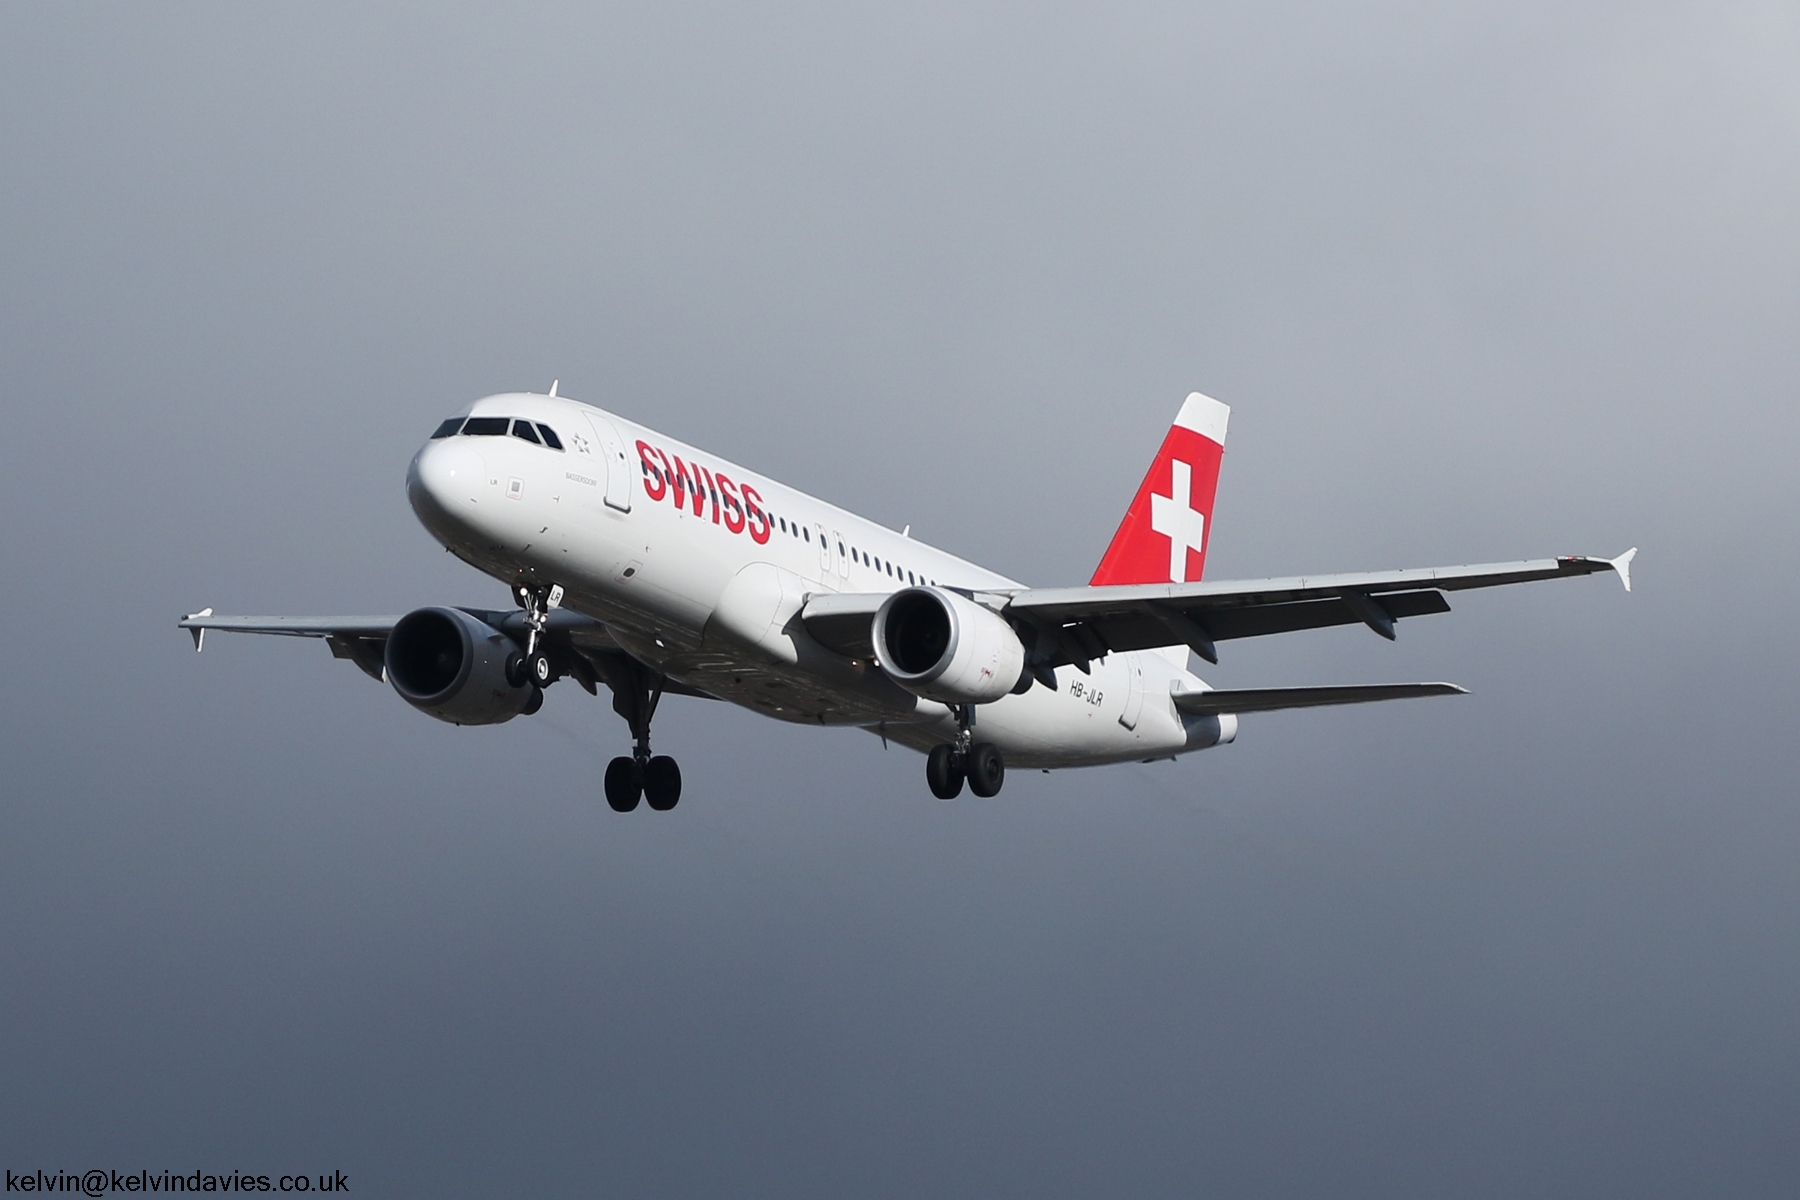 Swiss International A320 HB-JLR